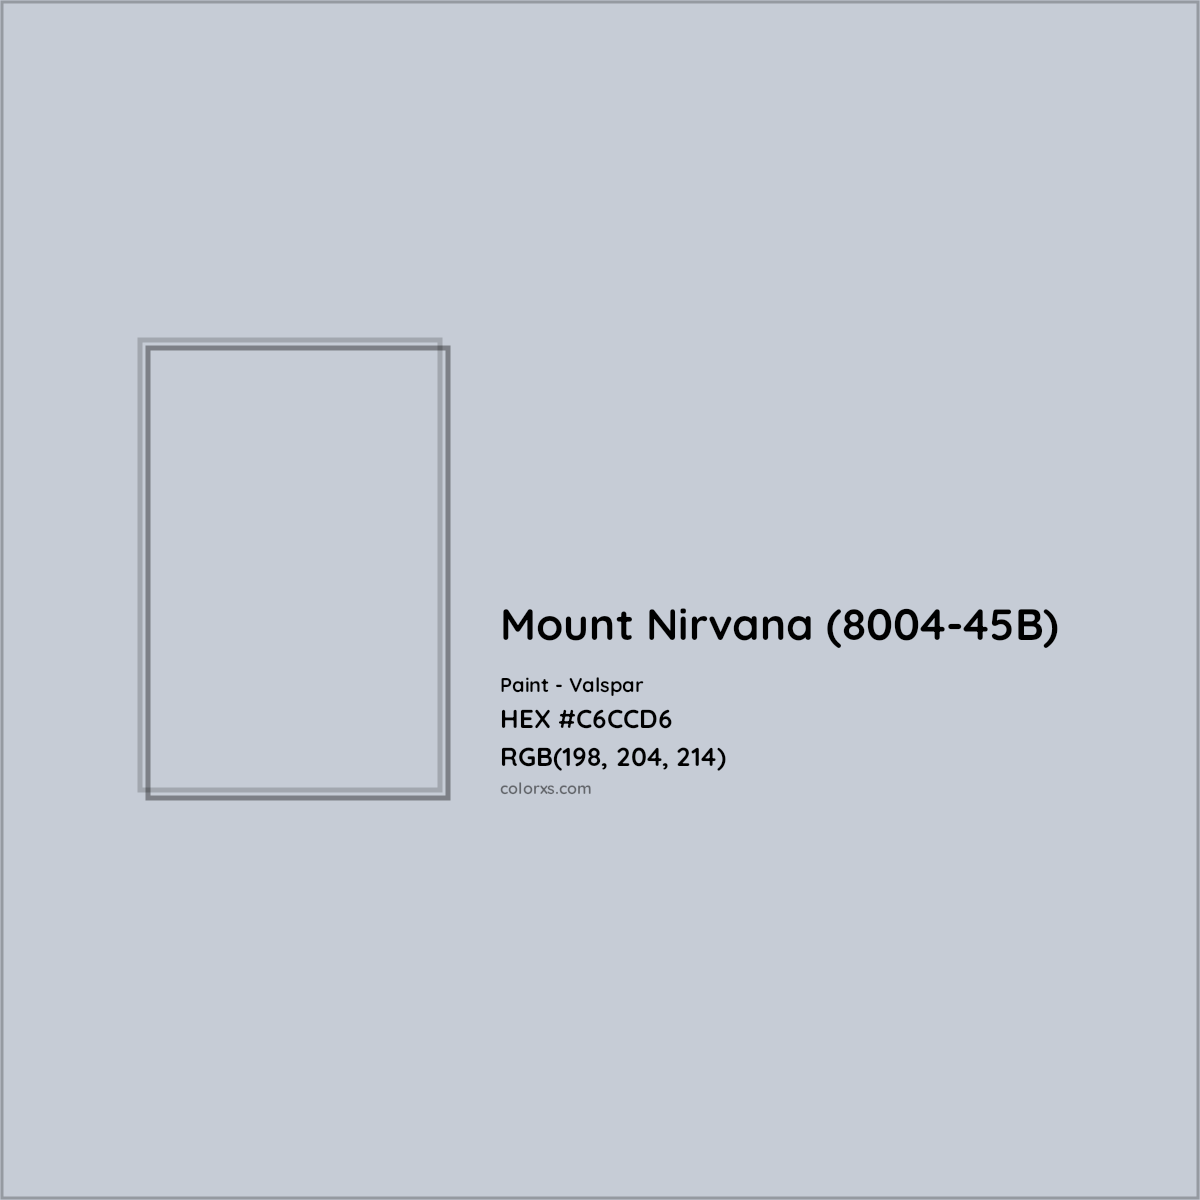 HEX #C6CCD6 Mount Nirvana (8004-45B) Paint Valspar - Color Code